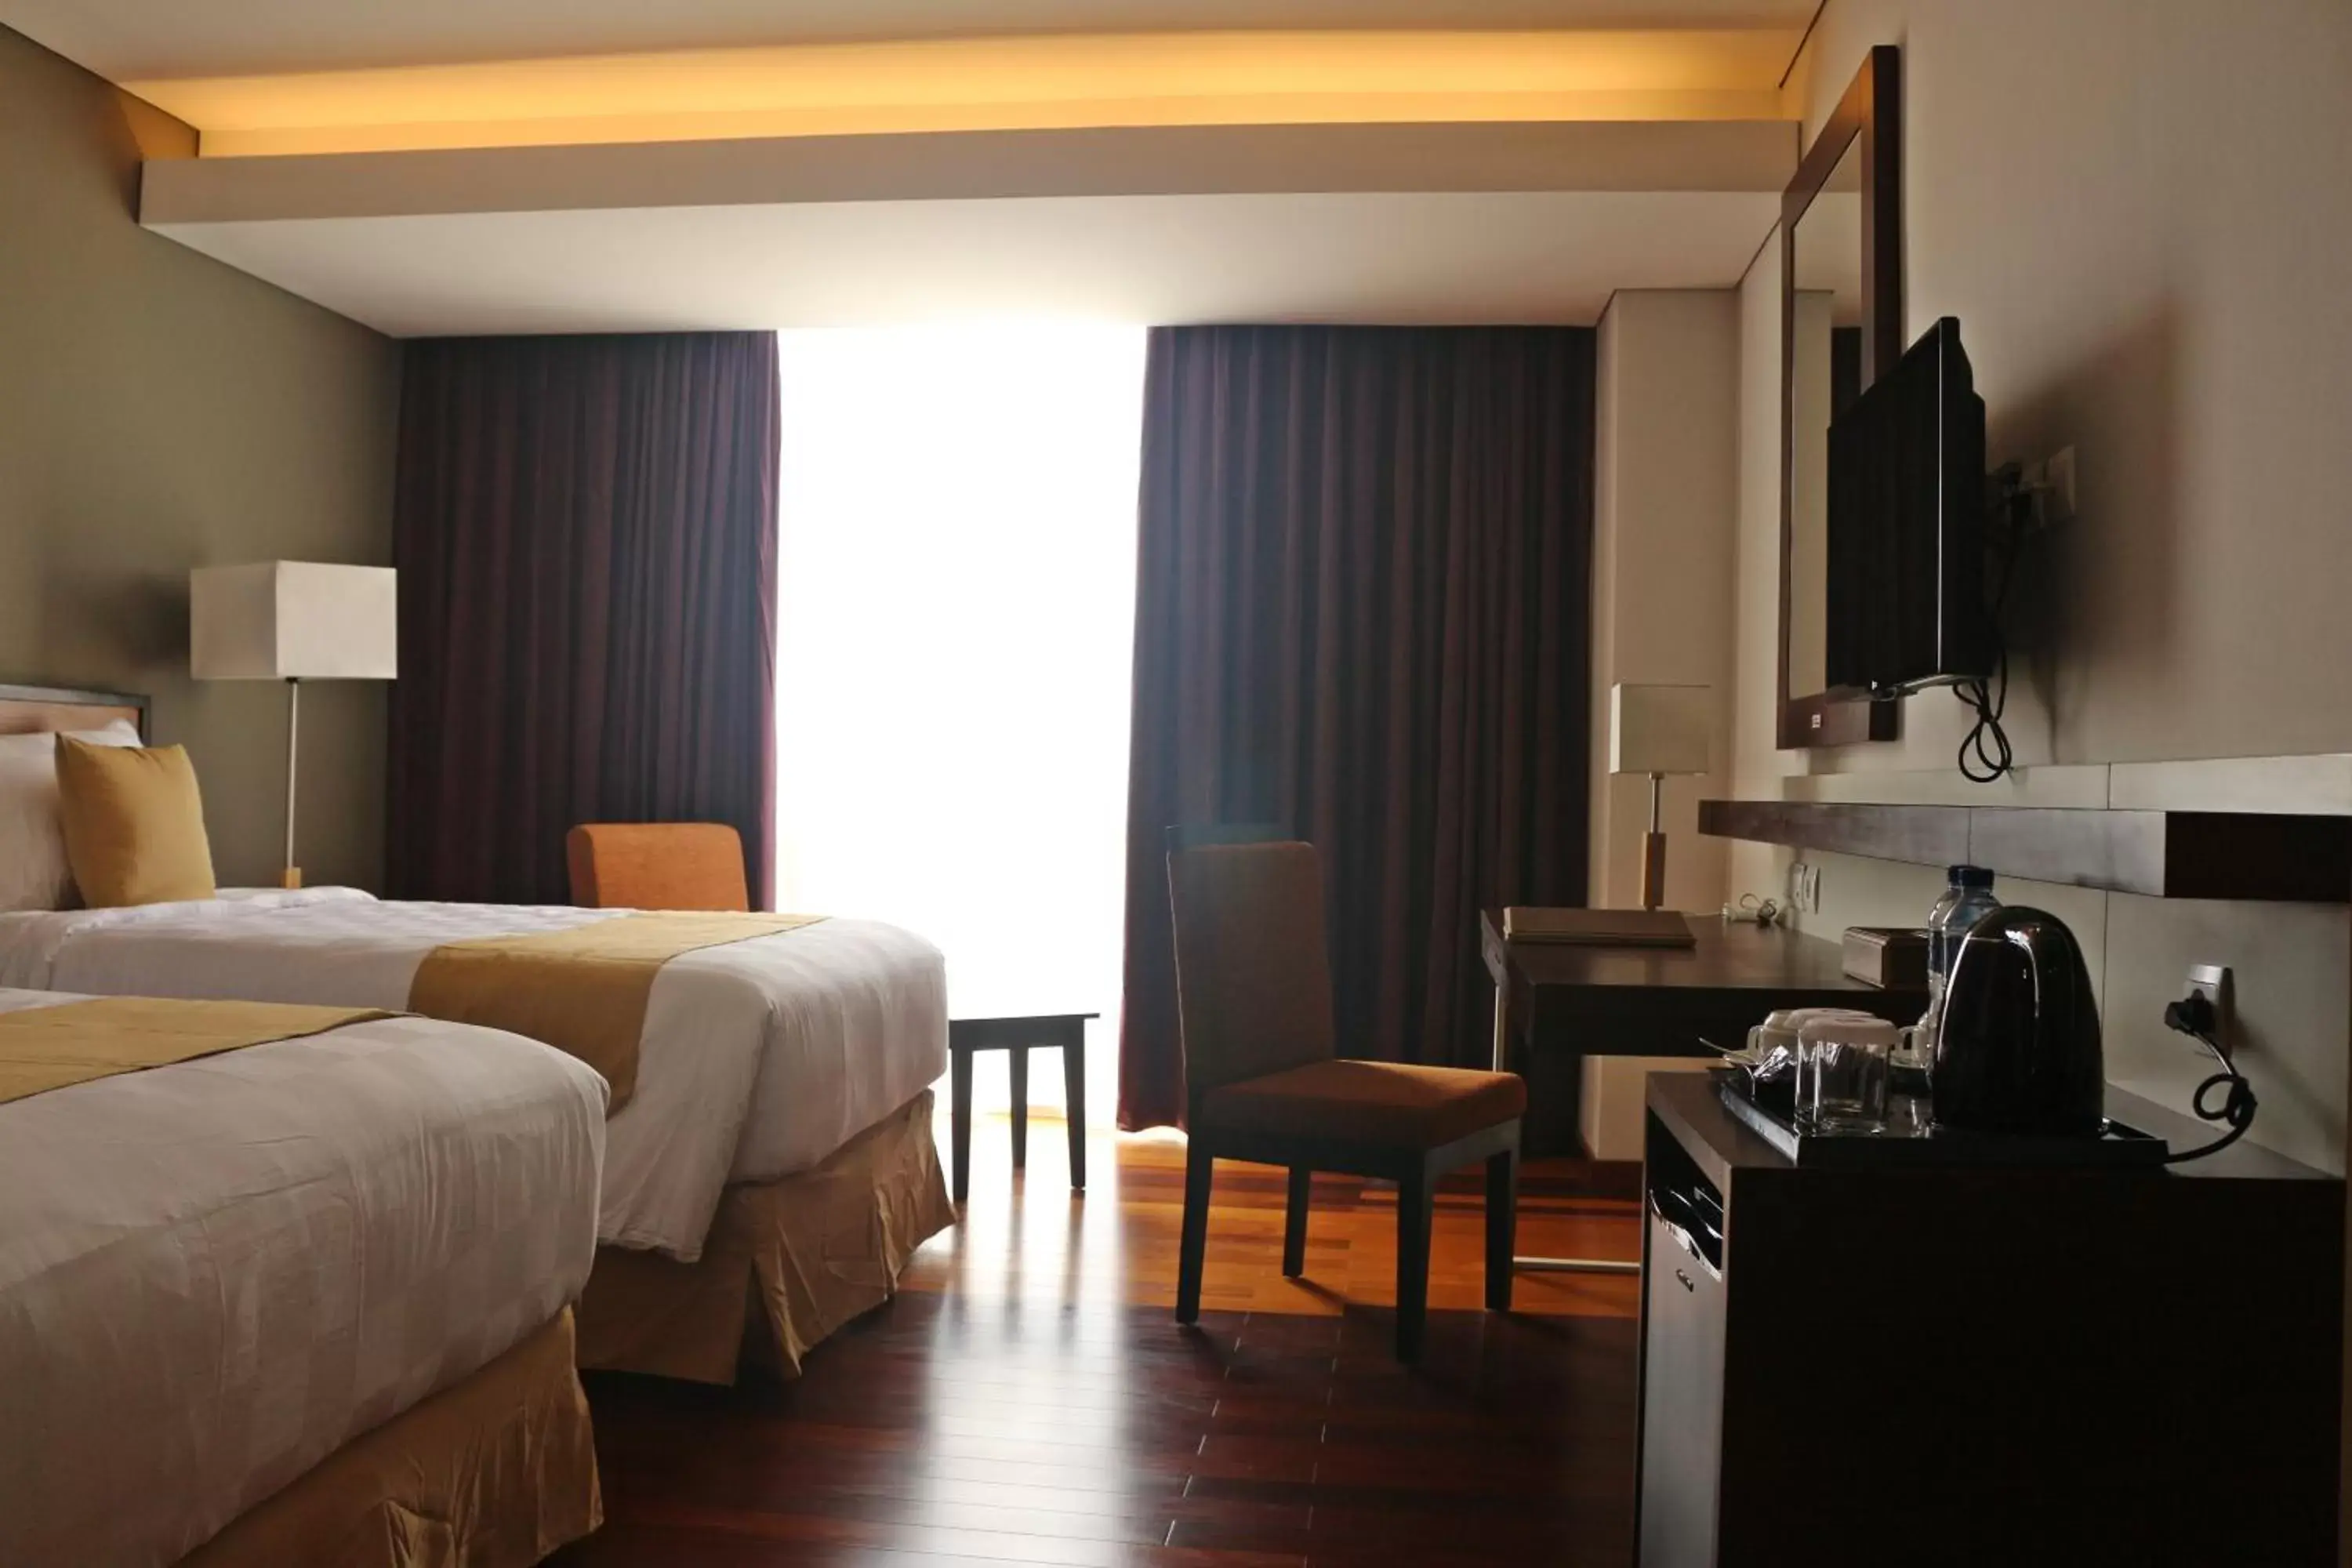 Bedroom, Room Photo in Best Western Plus Coco Palu